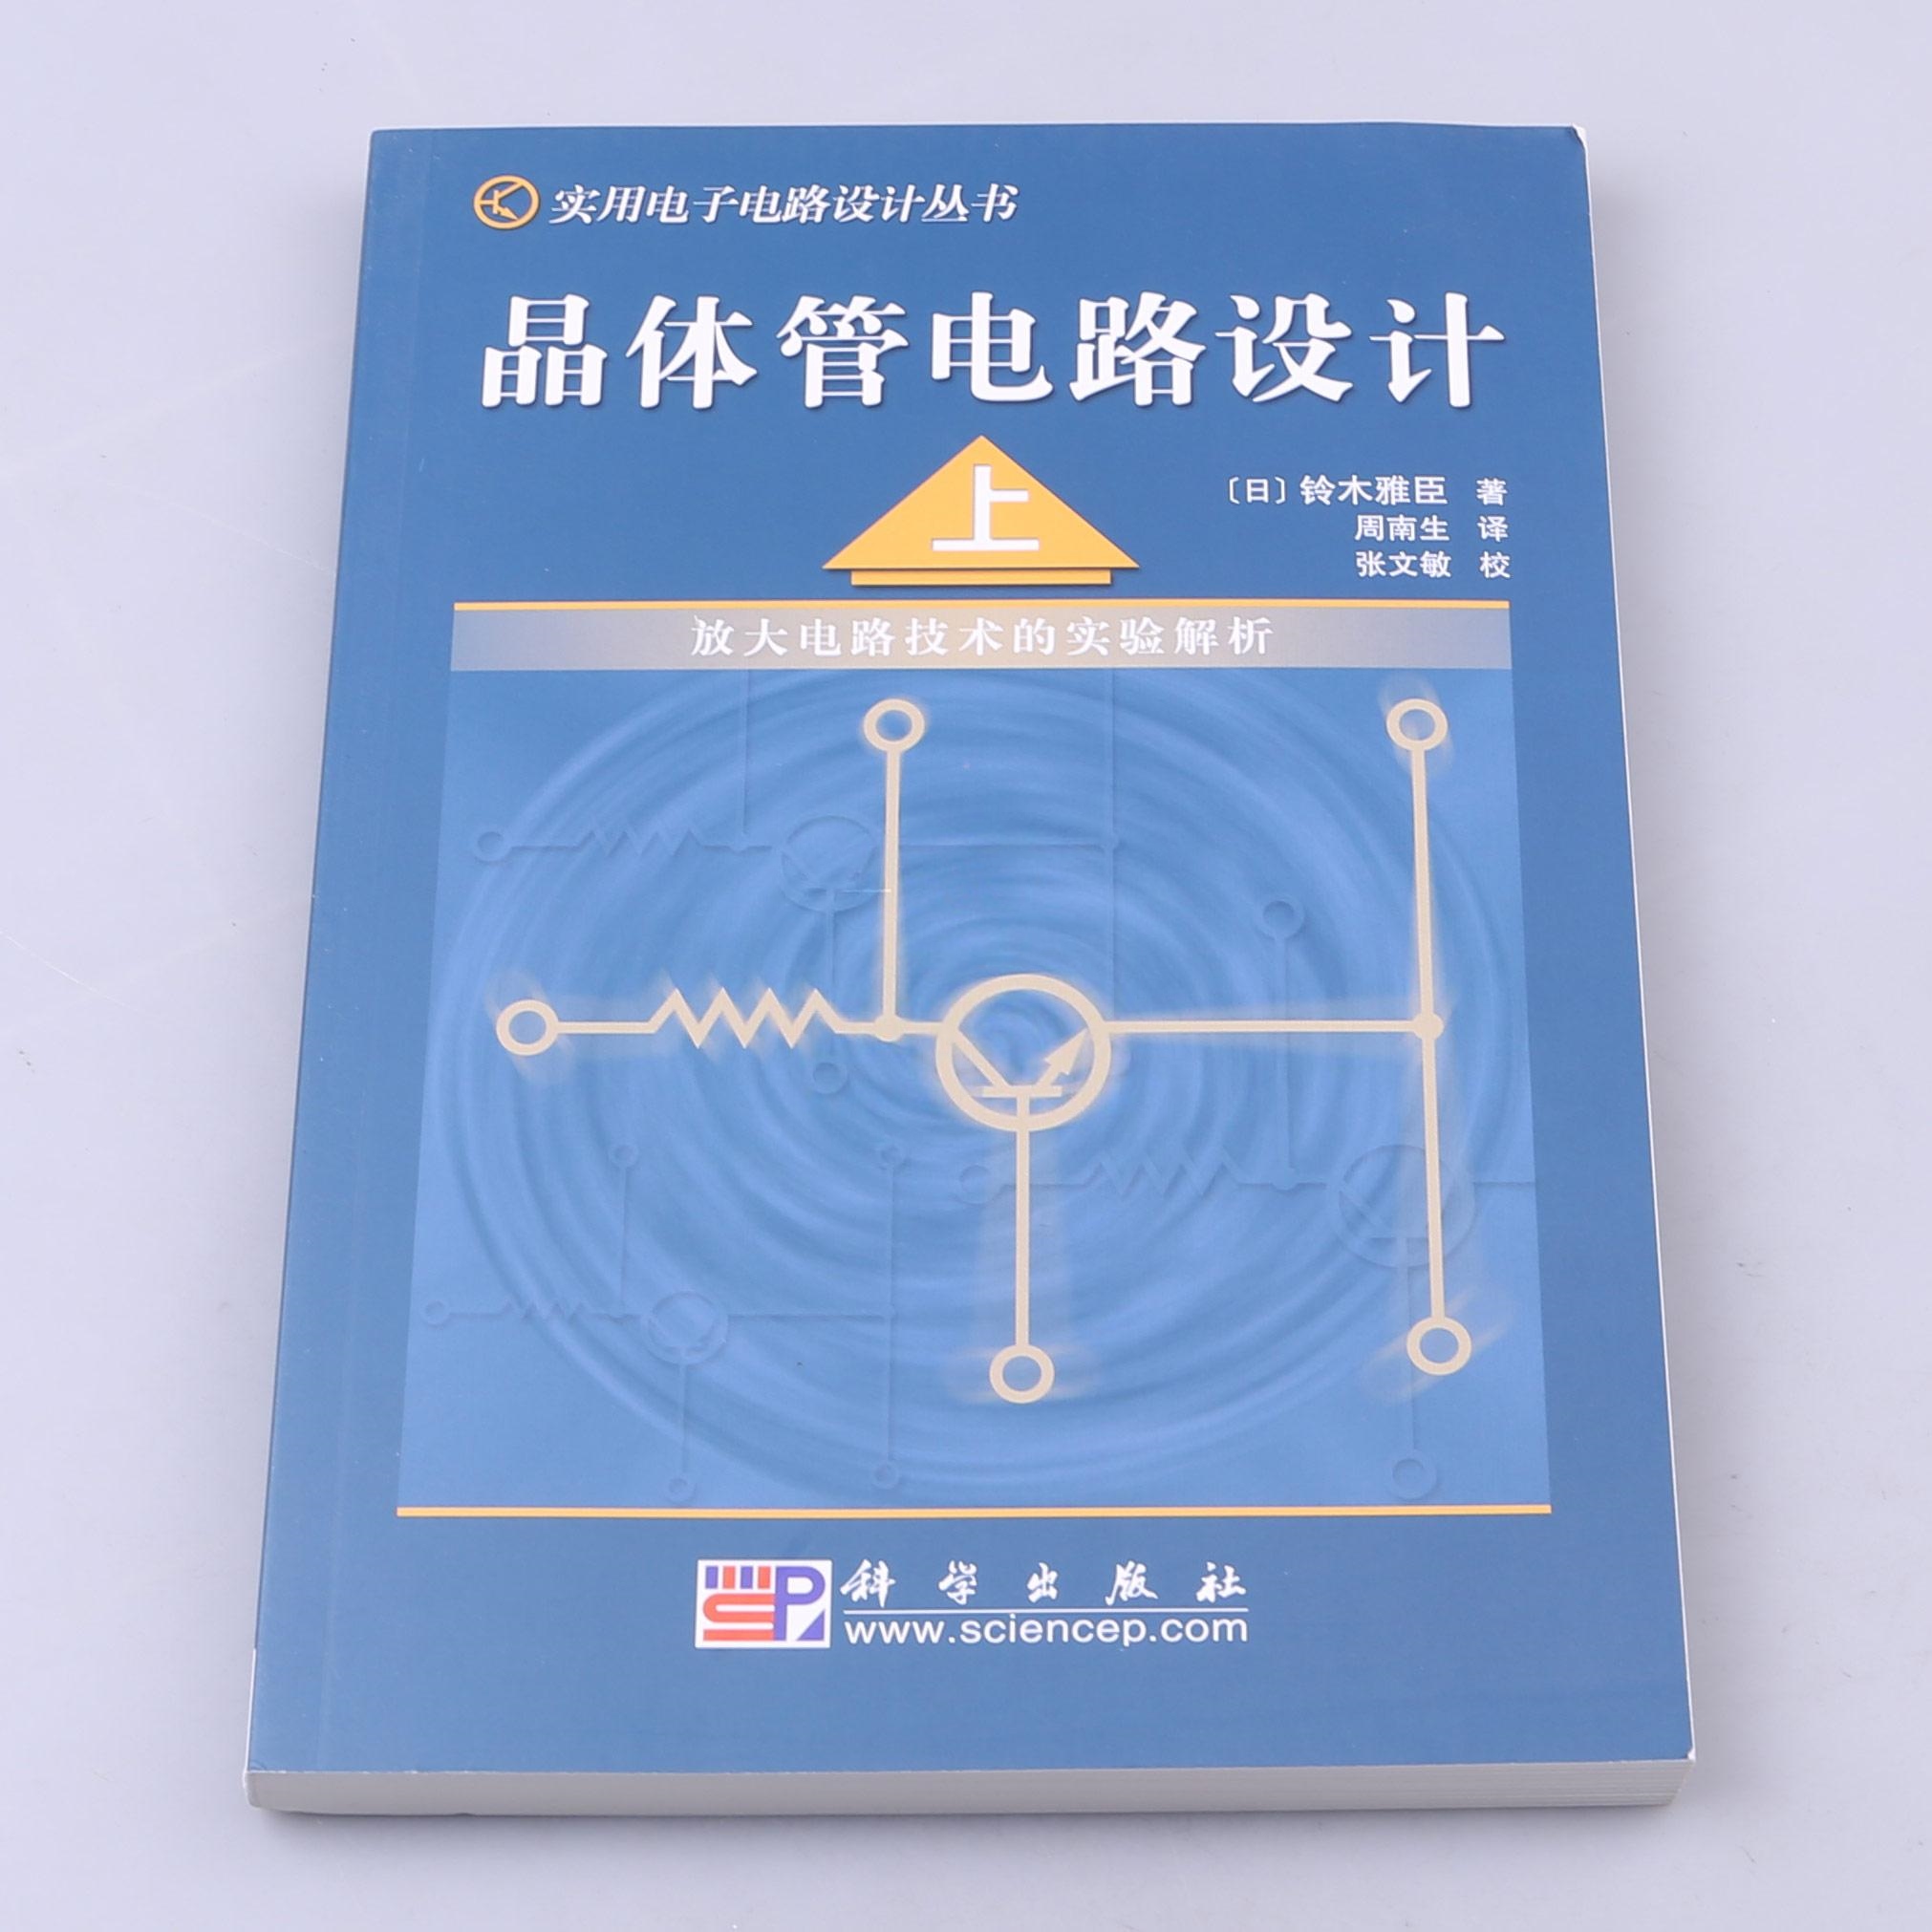 晶体管电路设计(上册)_未分类